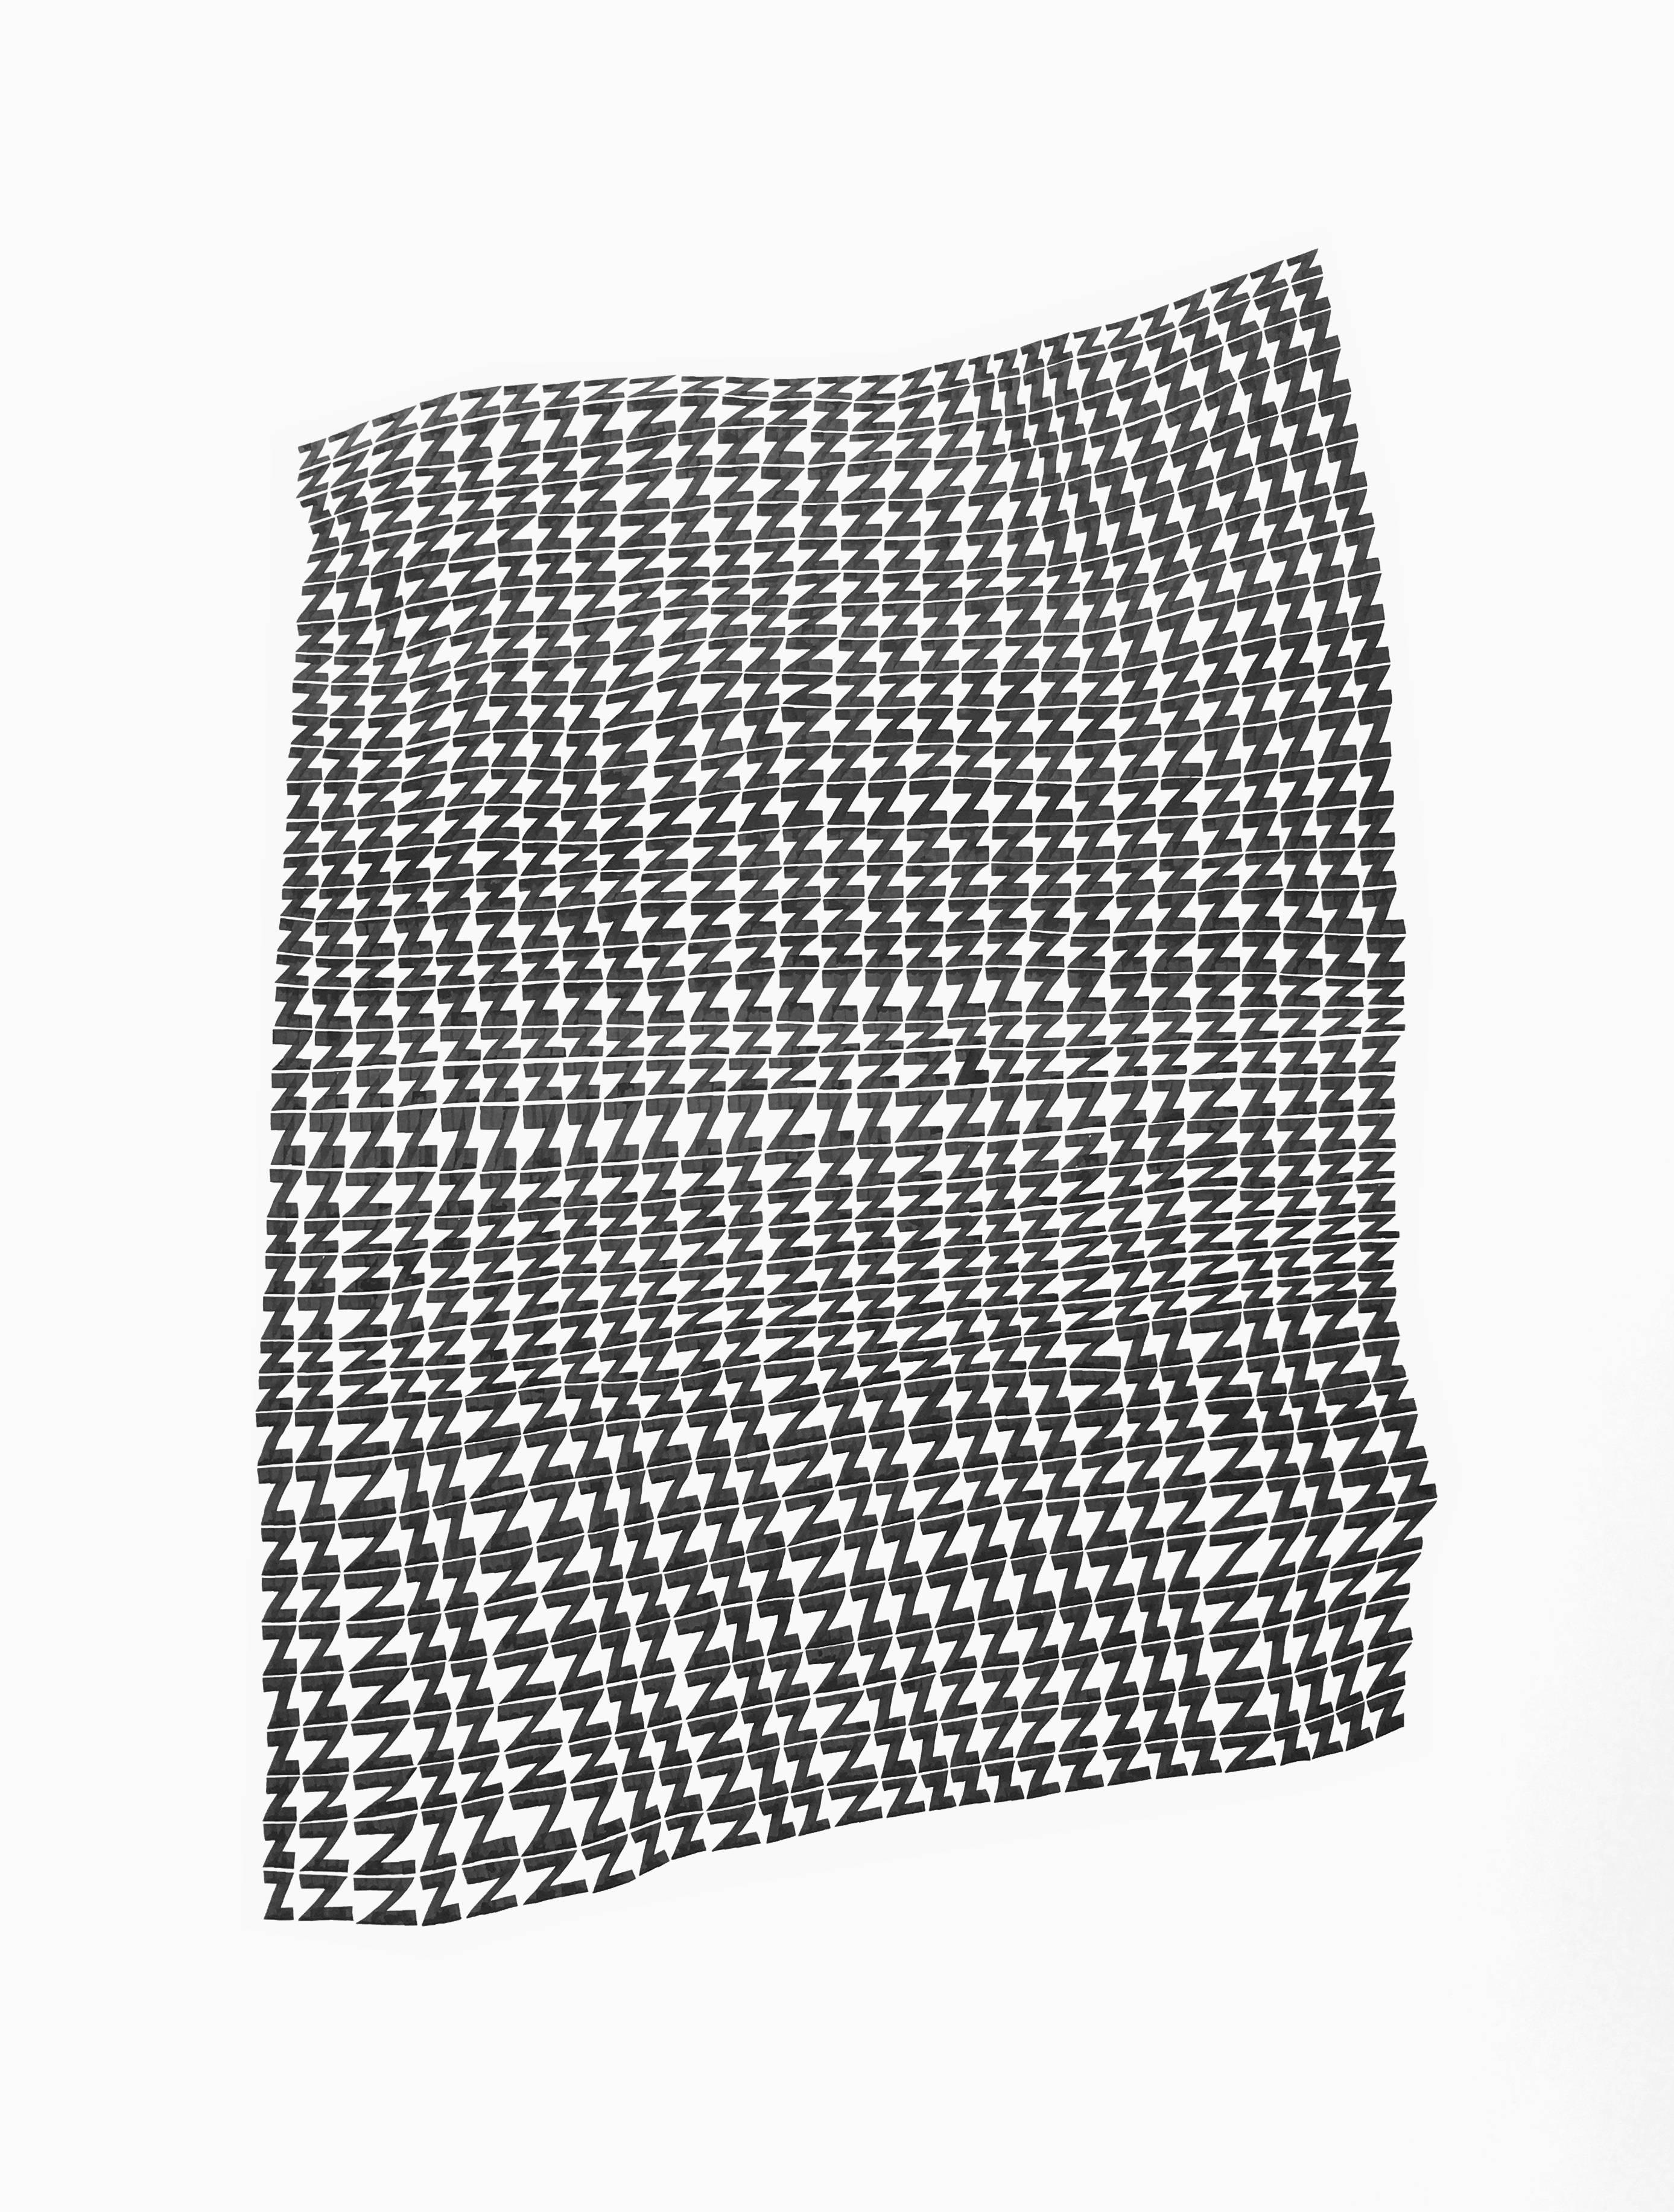 Zs.1- abstrakte geometrische schwarz-weiße Tuschezeichnung auf Papier